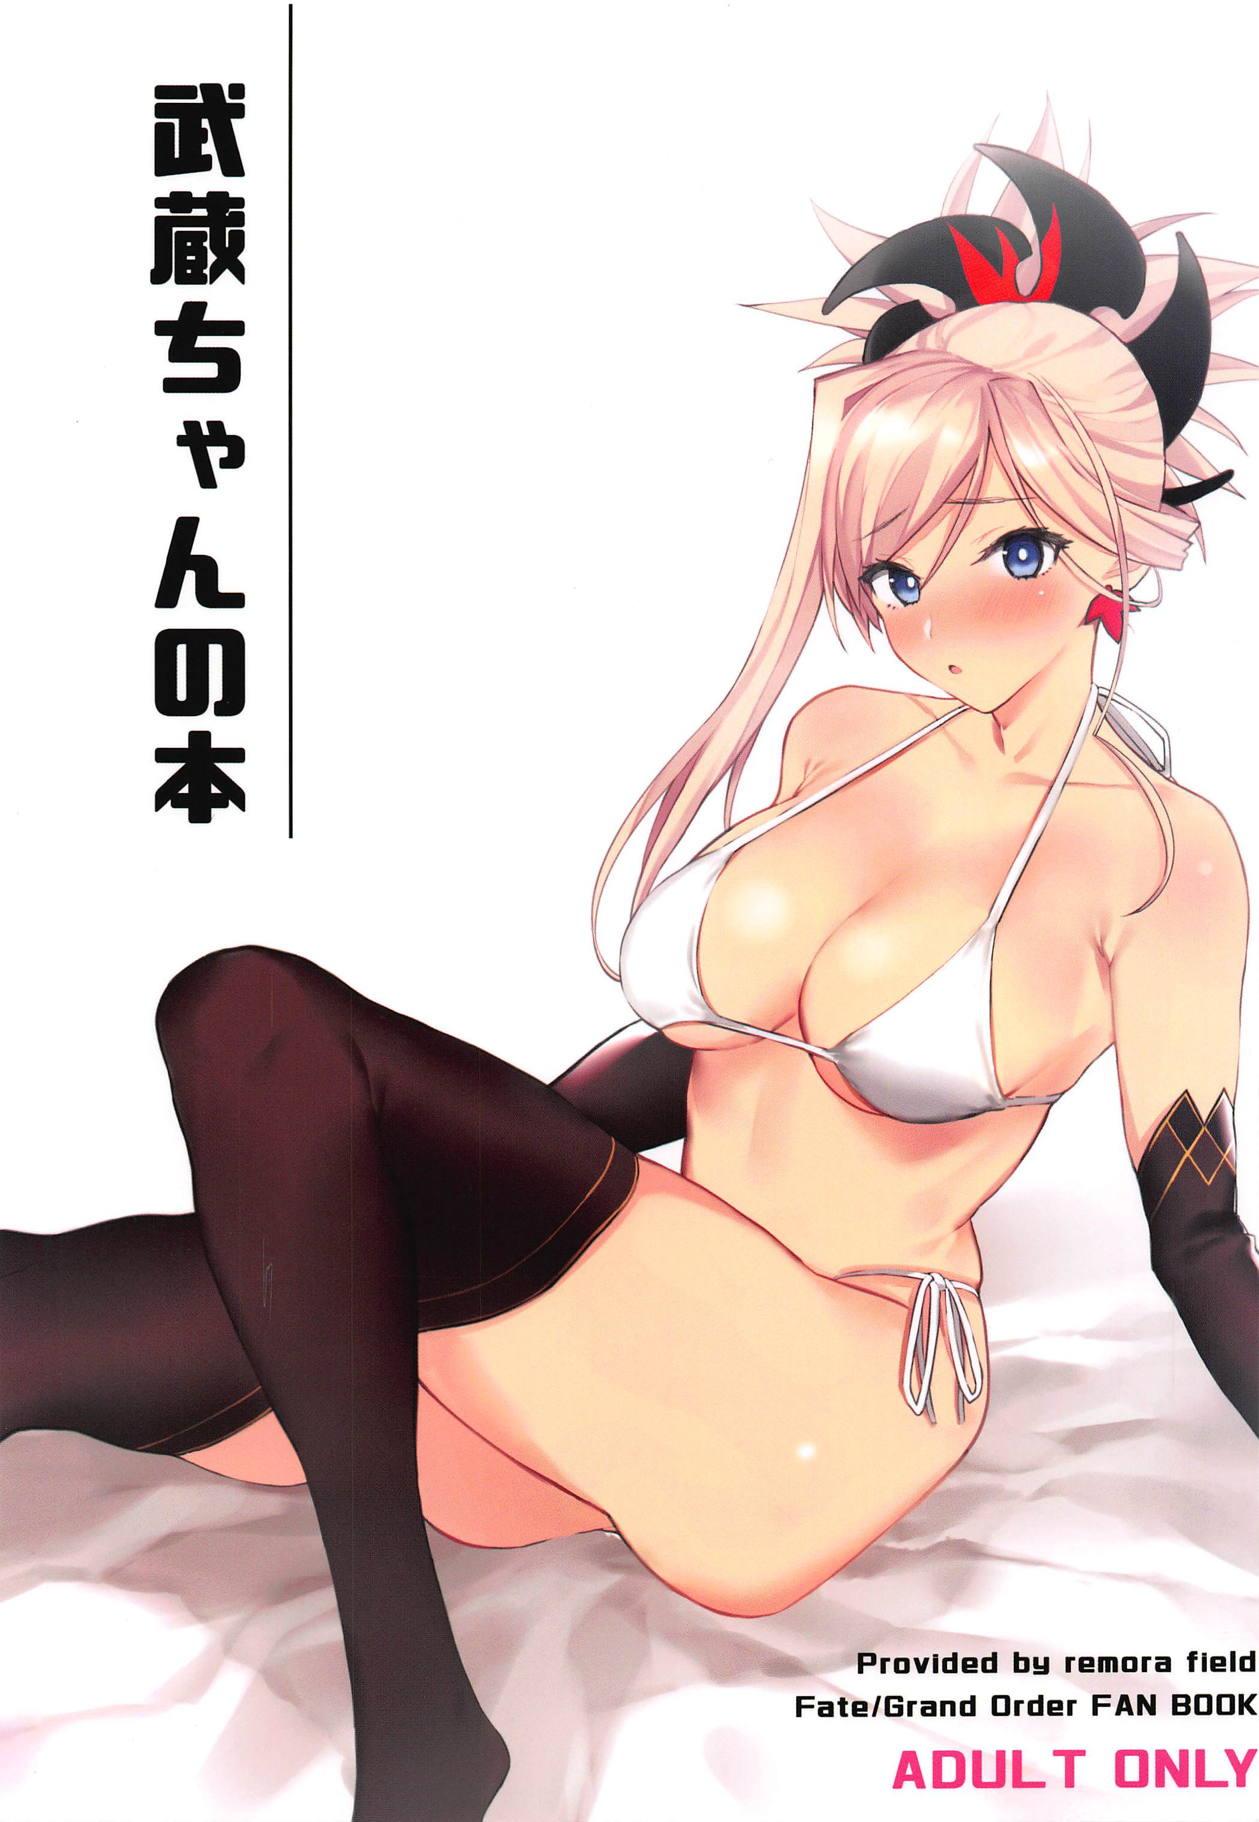 Alone Musashi-chan no Hon - Fate grand order Hardcore Porno - Picture 1